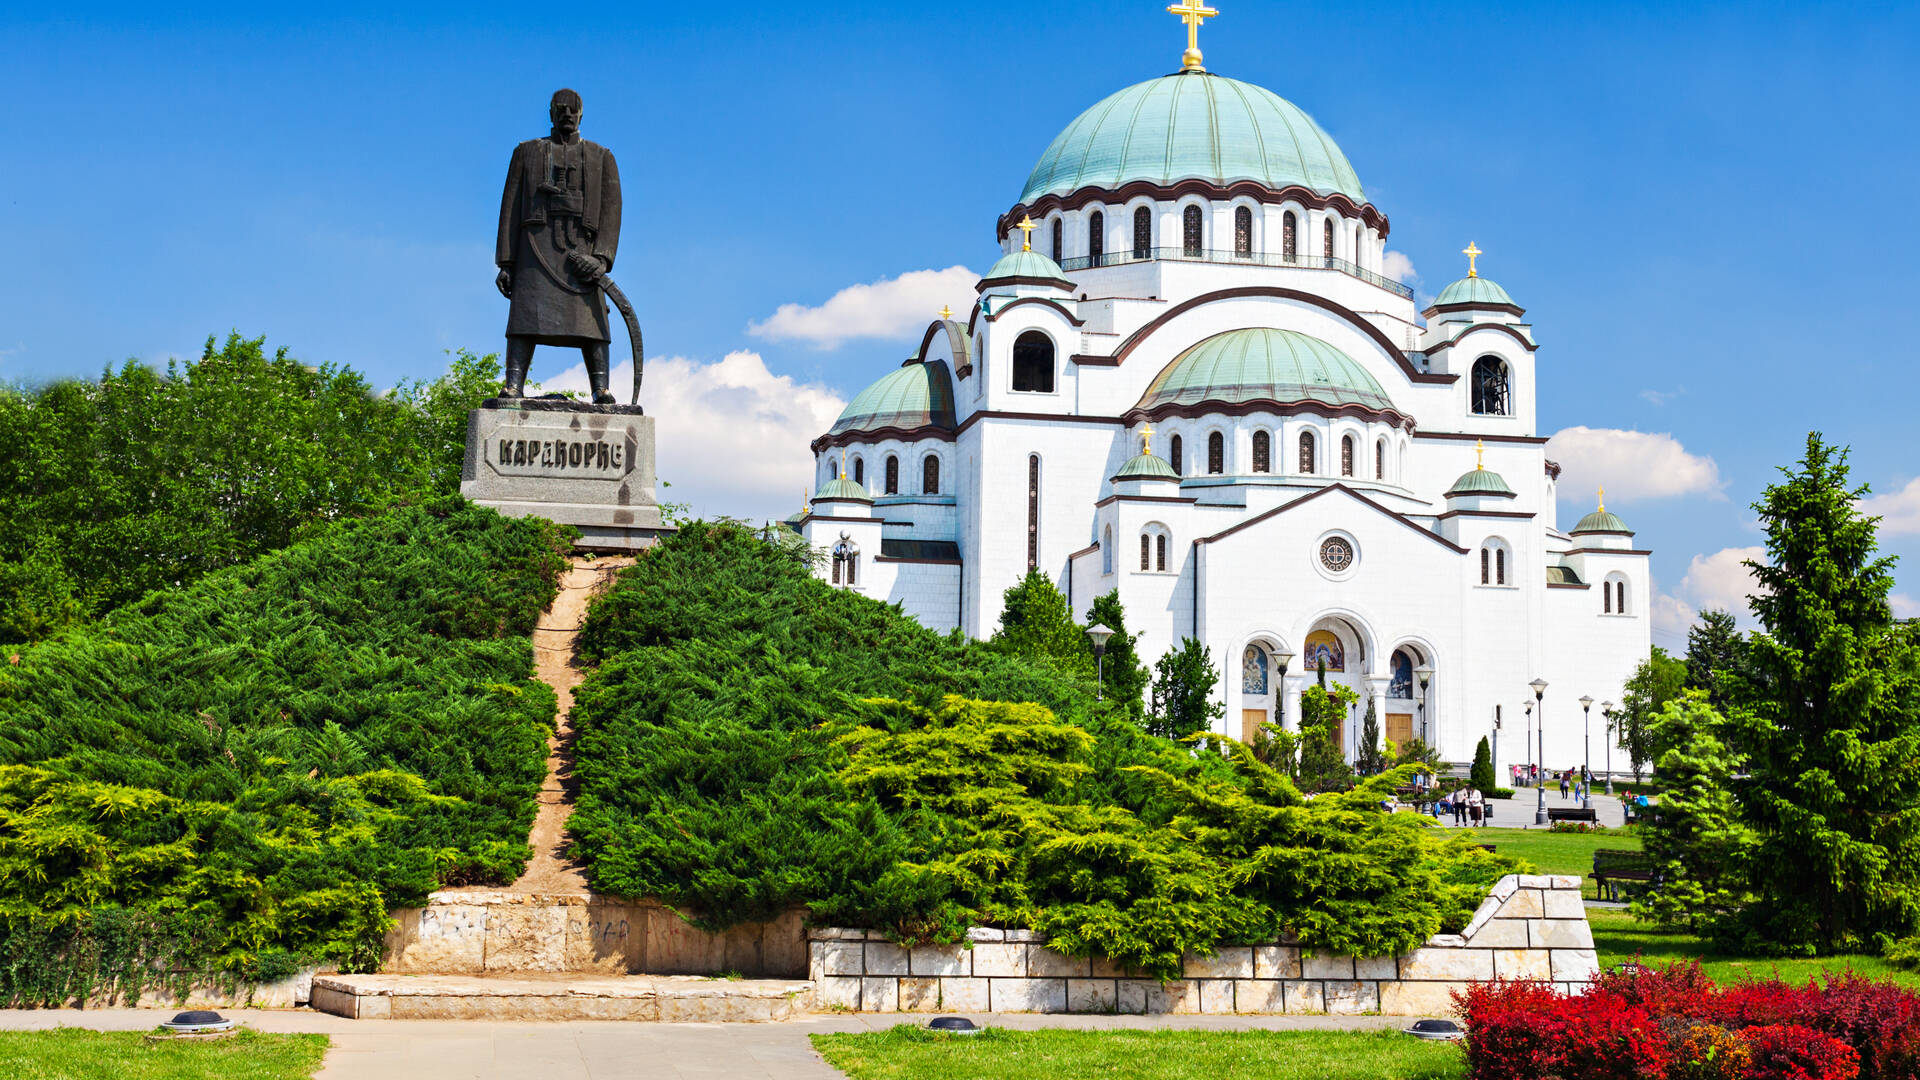 Belgrad Reisen und Billigflug - Serbien - Hotels und Flug nach Belgrad